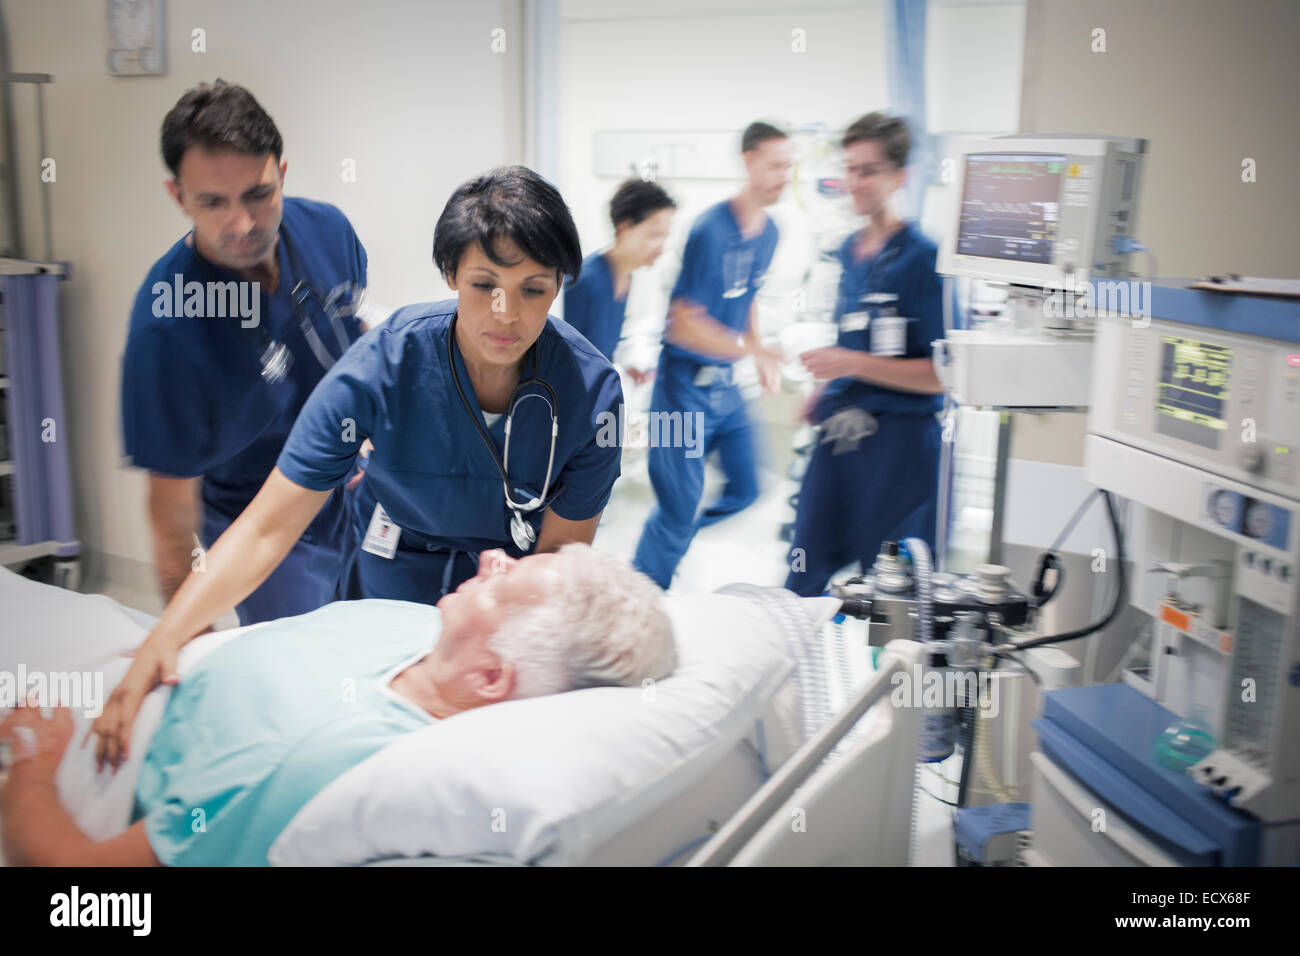 Two doctors preparing elderly patient before medical procedure Stock Photo